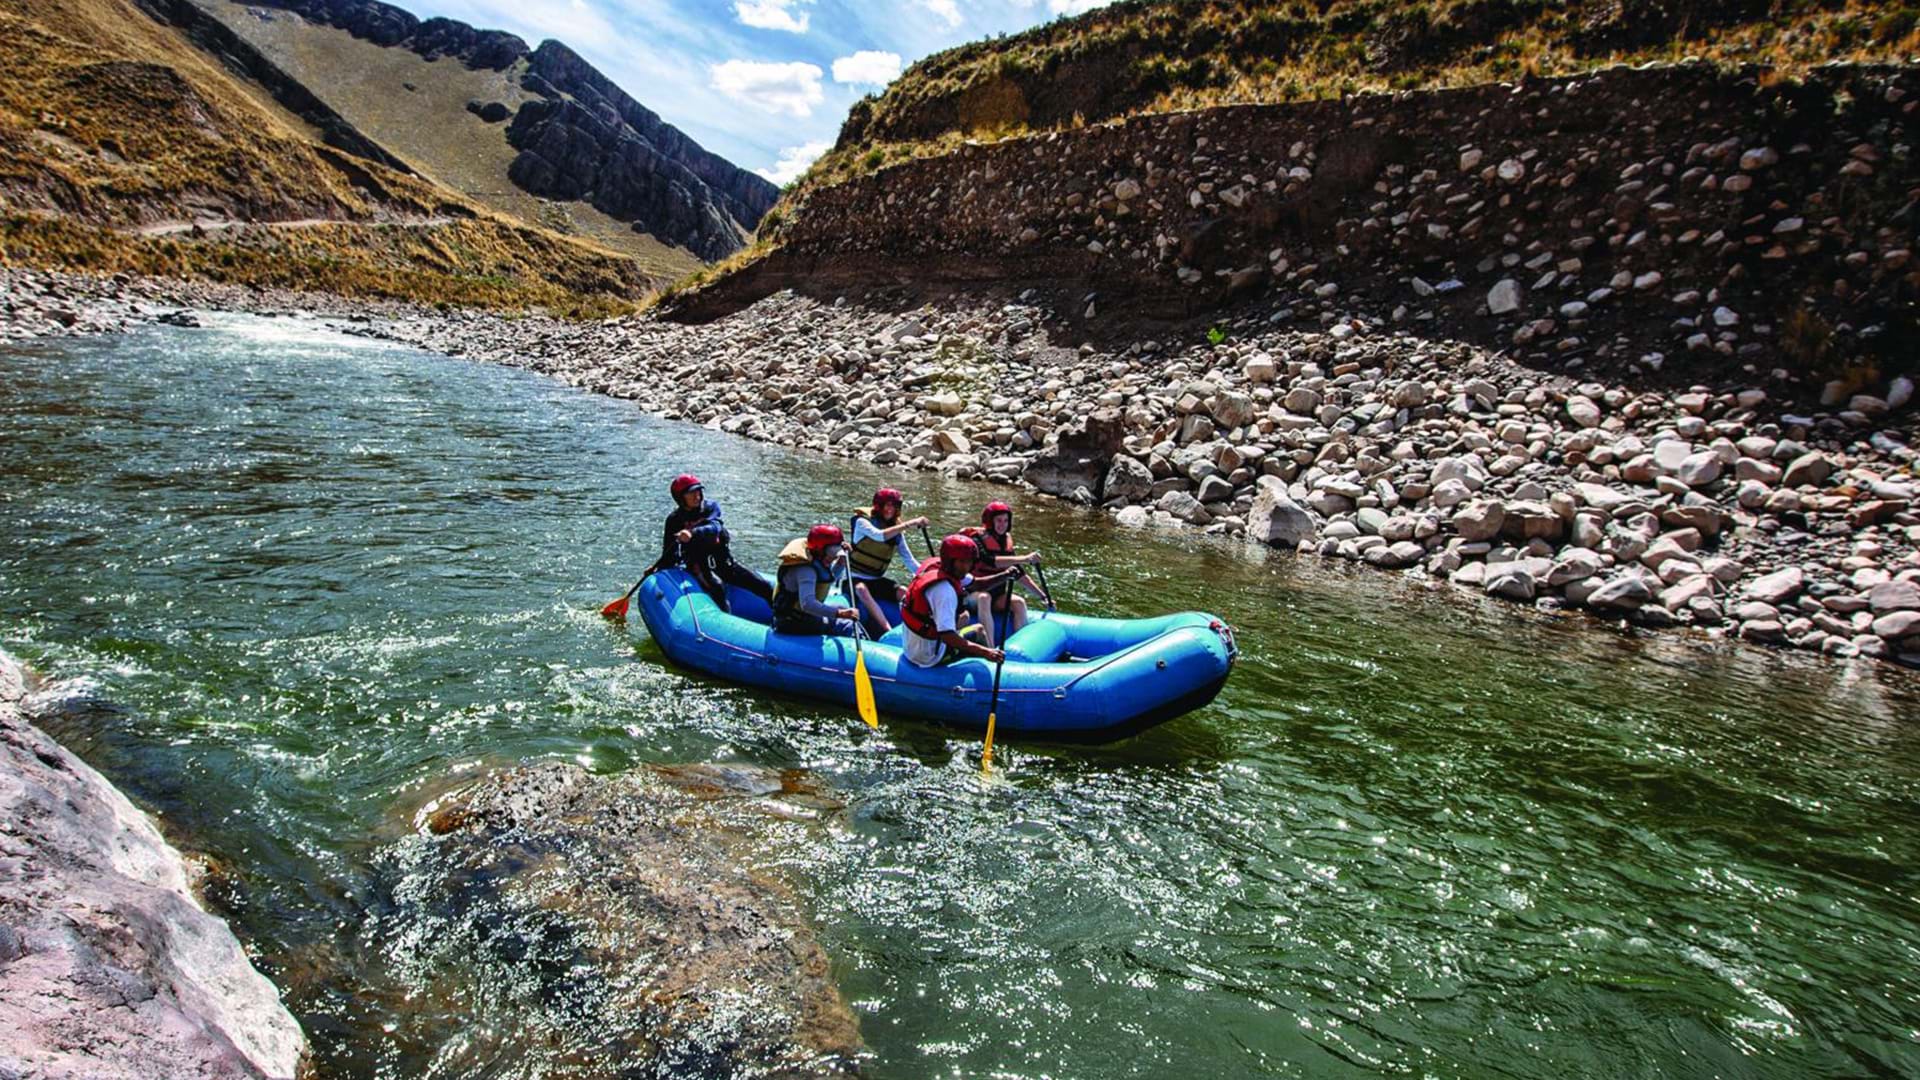 People River Rafting in Peru.